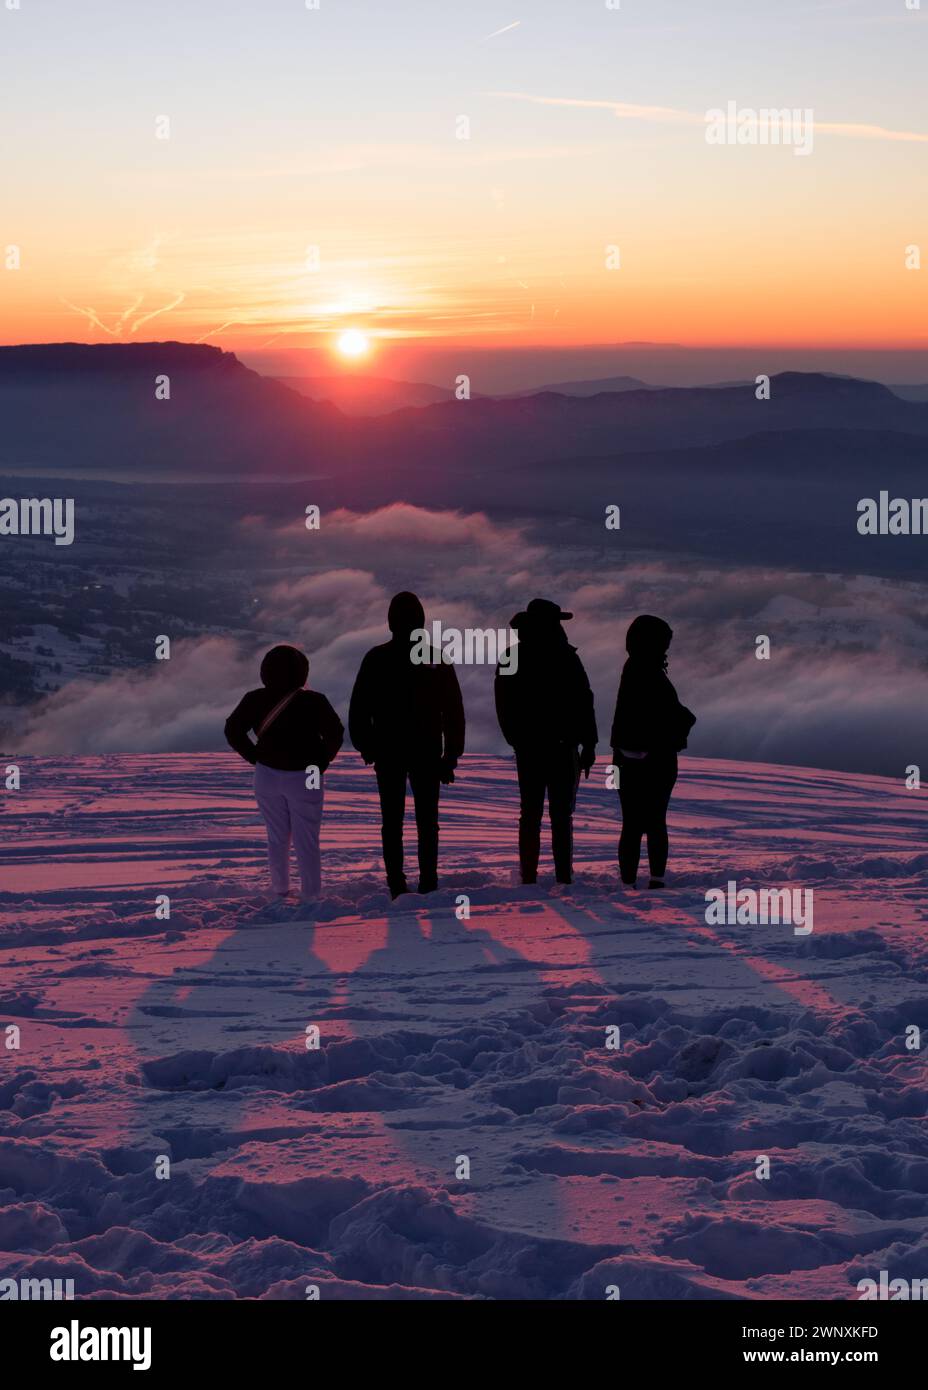 persone che contemplano un bellissimo tramonto invernale Foto Stock